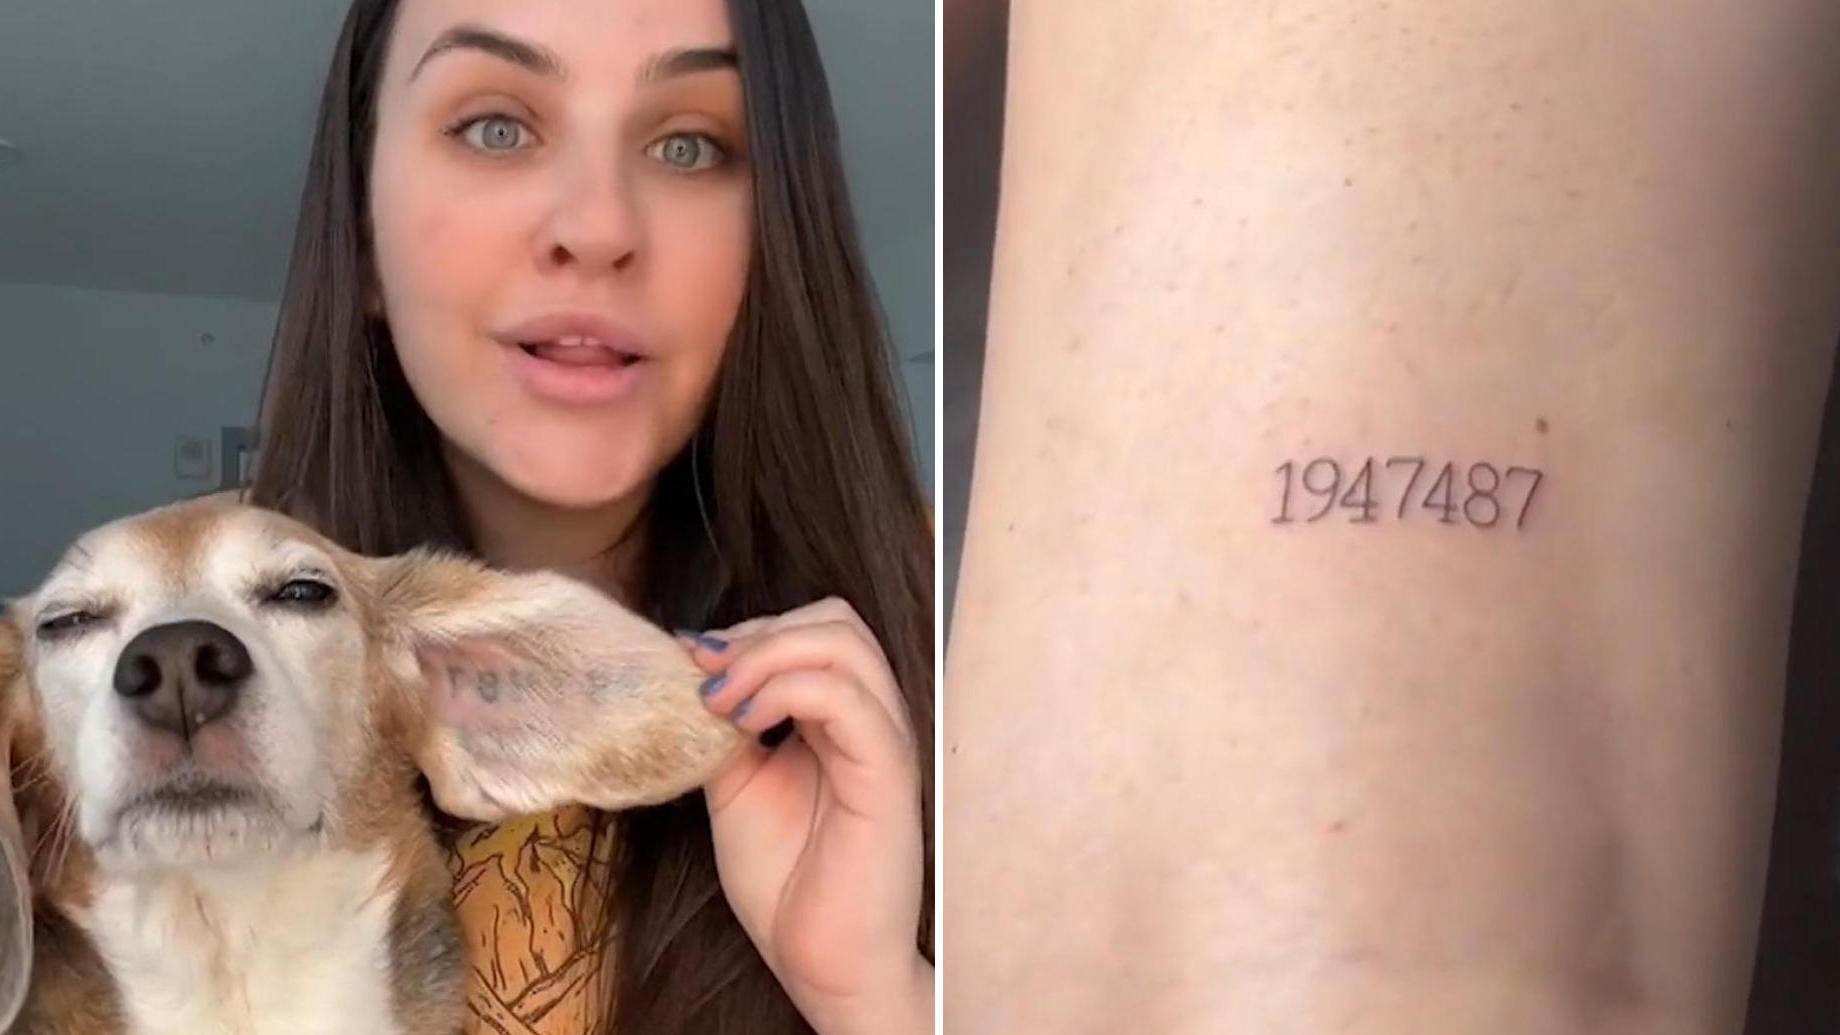 Por amor: una mujer se tatúa a su pareja con un perro que se salvó de la experimentación con animales